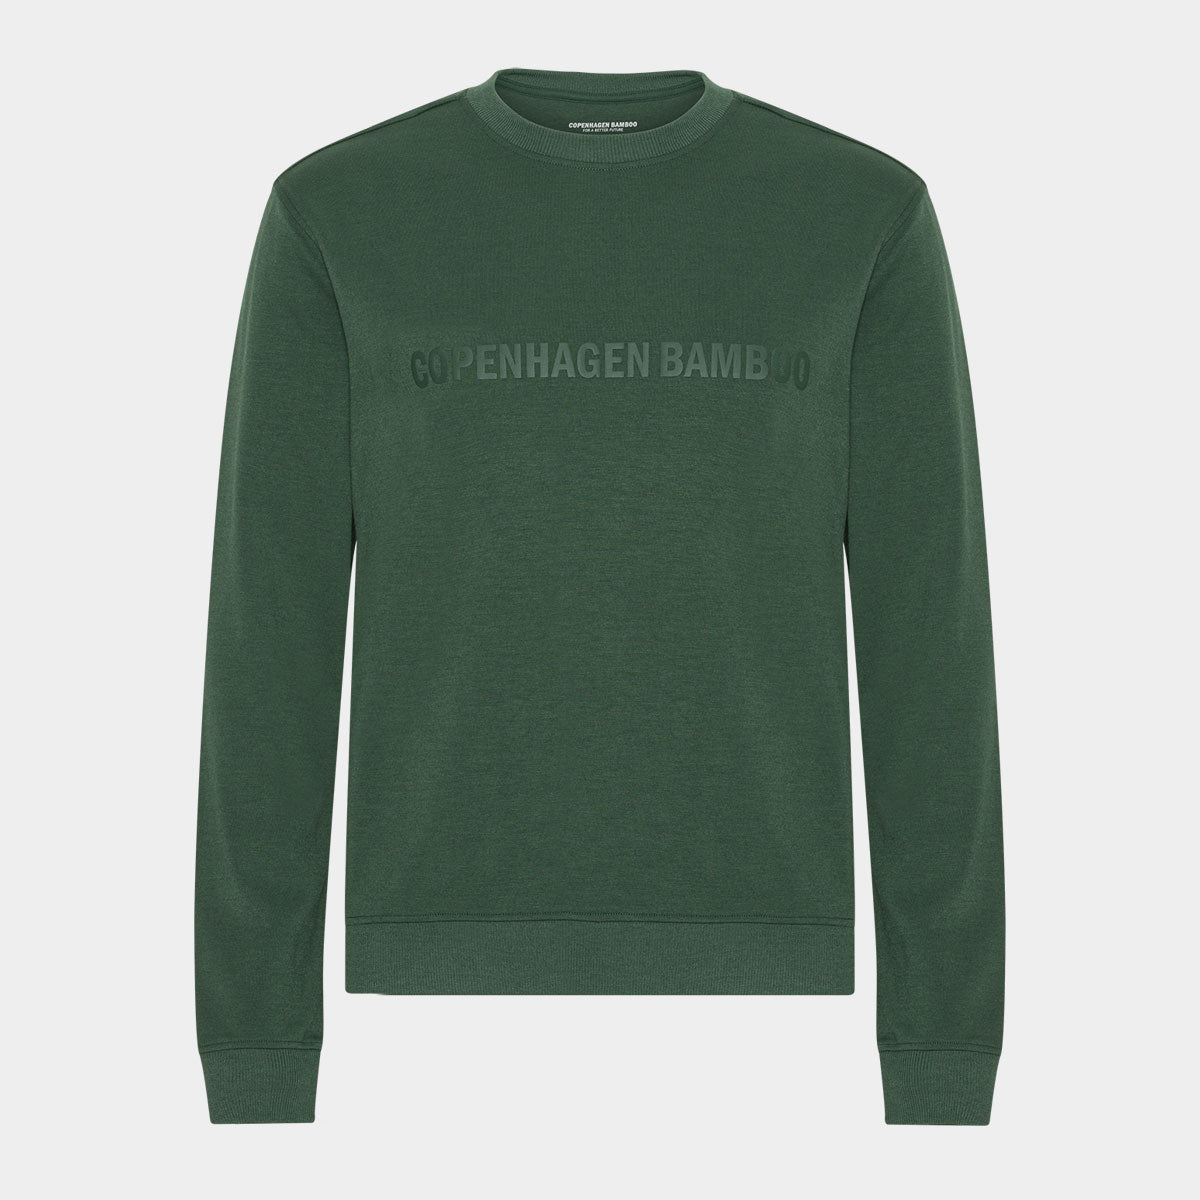 Billede af Grøn bambus sweatshirt med logo, L hos Bambustøj.dk